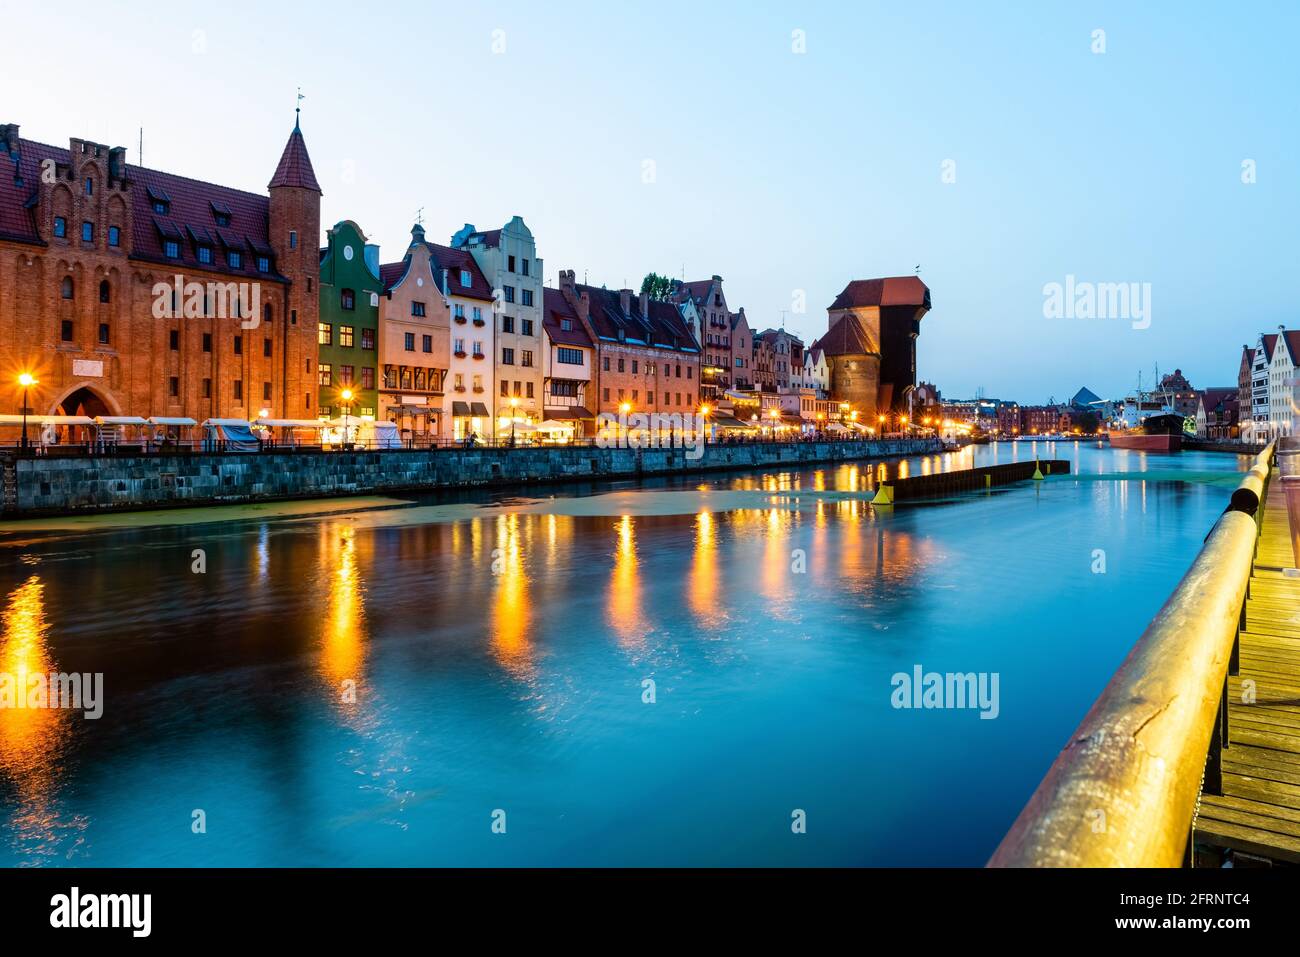 Blick auf die Stadt Danzig bei Nacht am Fluss. Blick auf den berühmten Kran und die Fassaden der alten mittelalterlichen Häuser an der Promenade in Danzig Stadt. Polen. Stockfoto